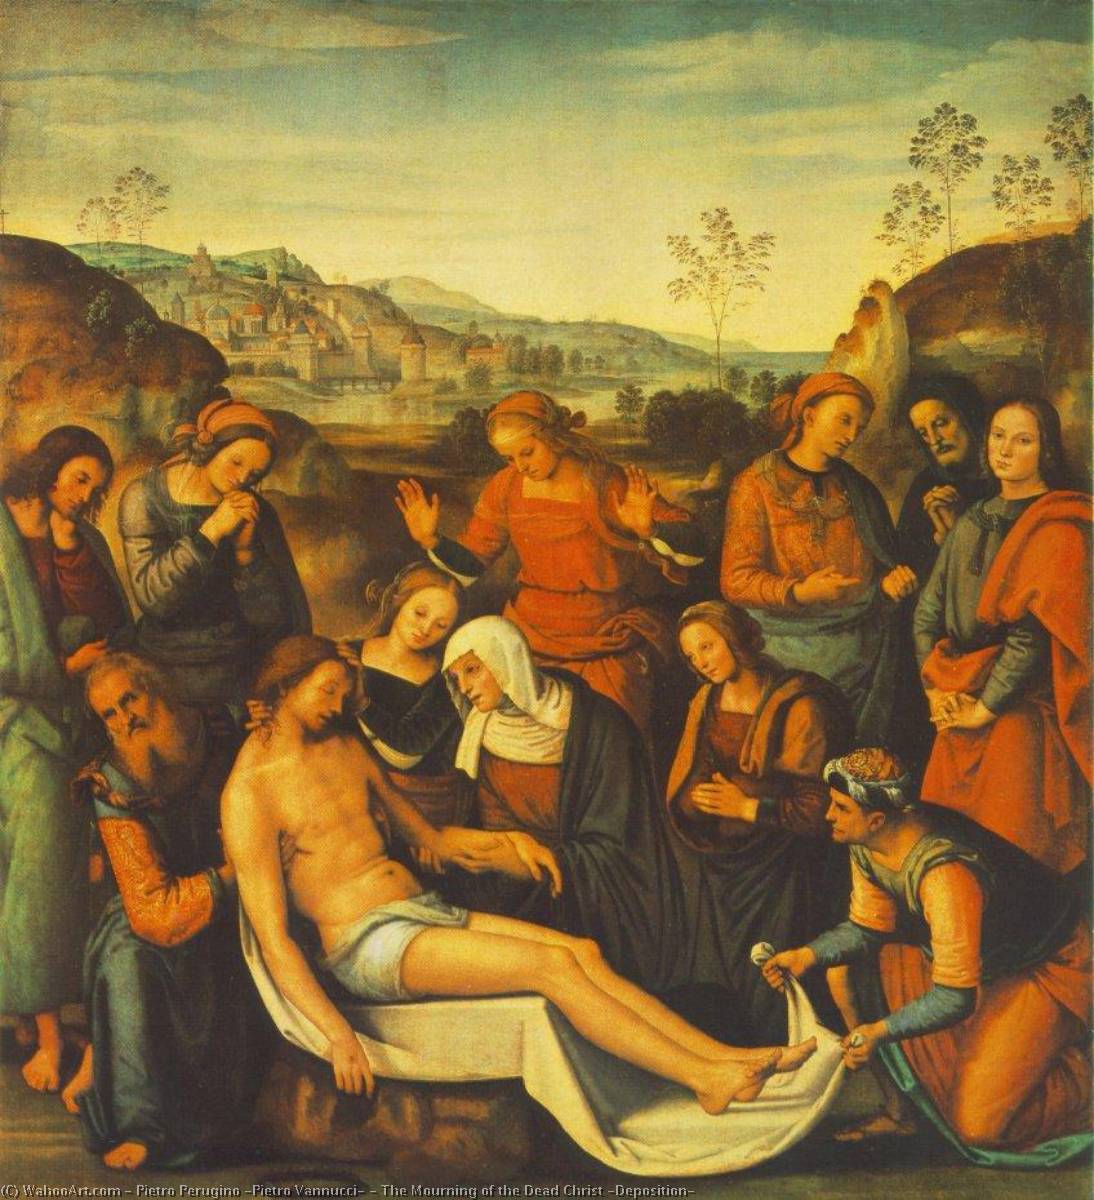 購入 美術館の複製、美術複製、絵画複製、美術館の品質プリント、美術品の複製、有名な絵画の複製、博物館の品質再現、キャンバスにアートプリント 死者のキリストの喪失(処分), 1495 バイ Pietro Perugino (Pietro Vannucci) (1446-1523) | ArtsDot.com